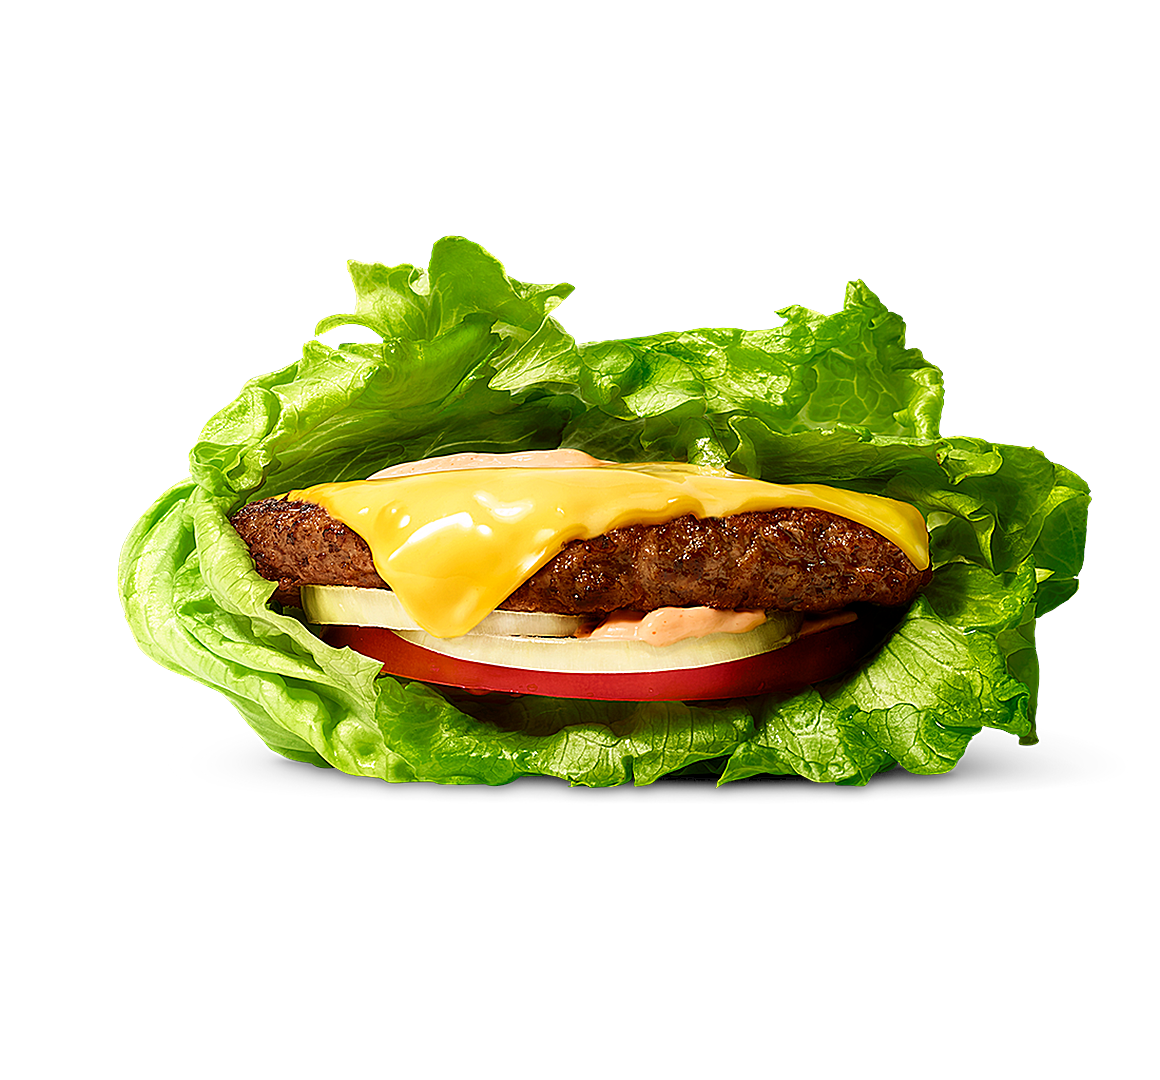 Salad wrap burger